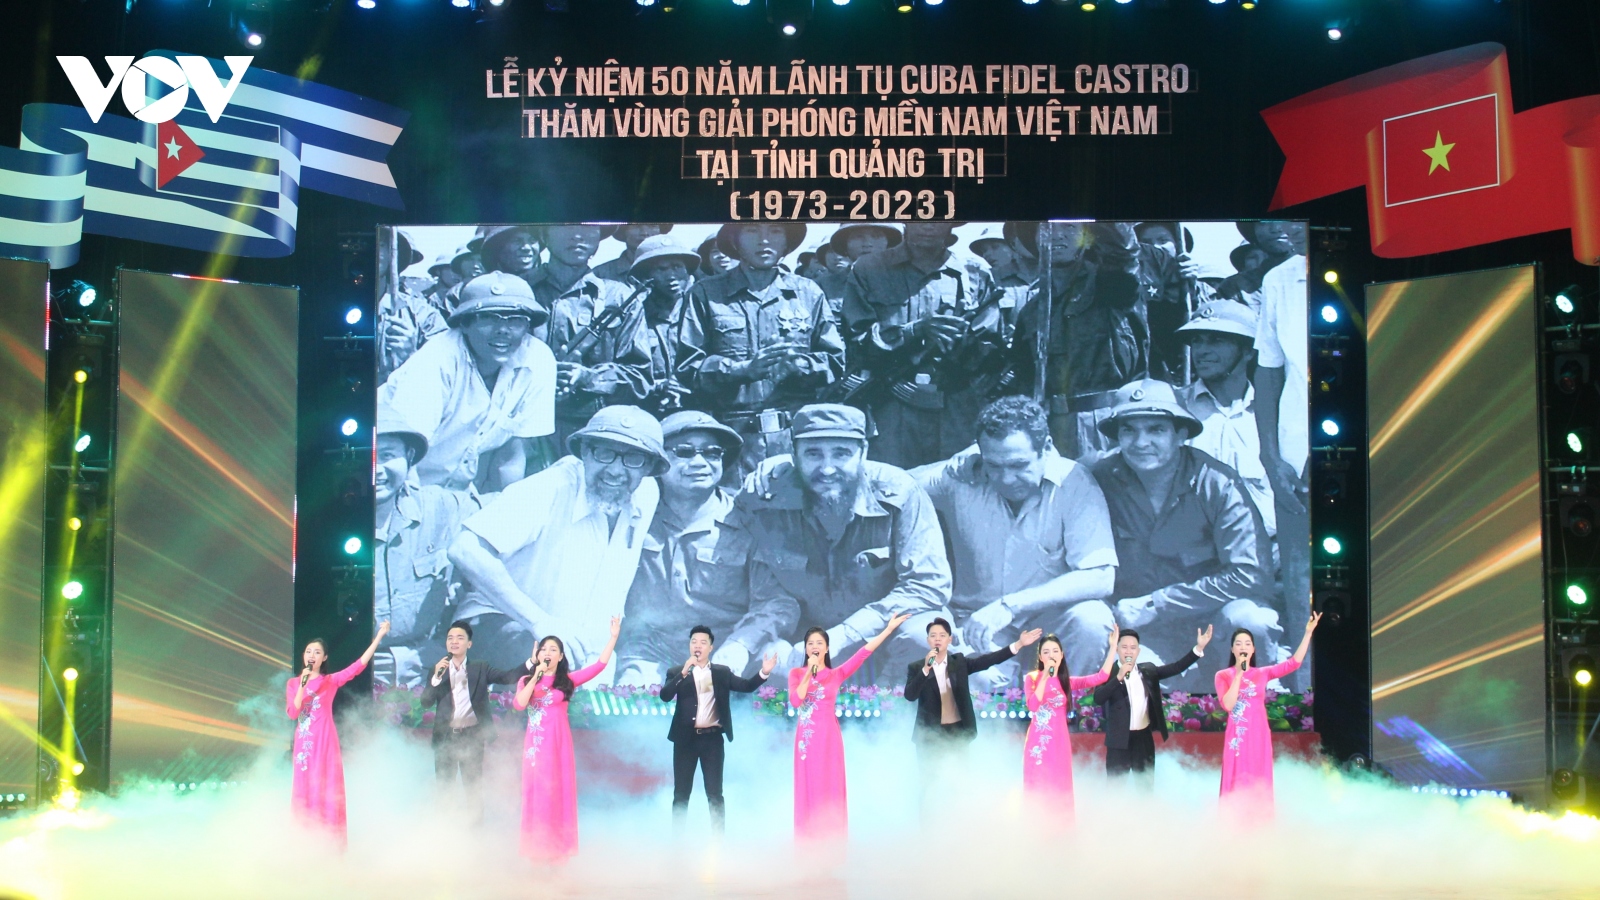 Lễ kỷ niệm 50 năm Chủ tịch Fidel Castro thăm vùng giải phóng miền Nam Việt Nam